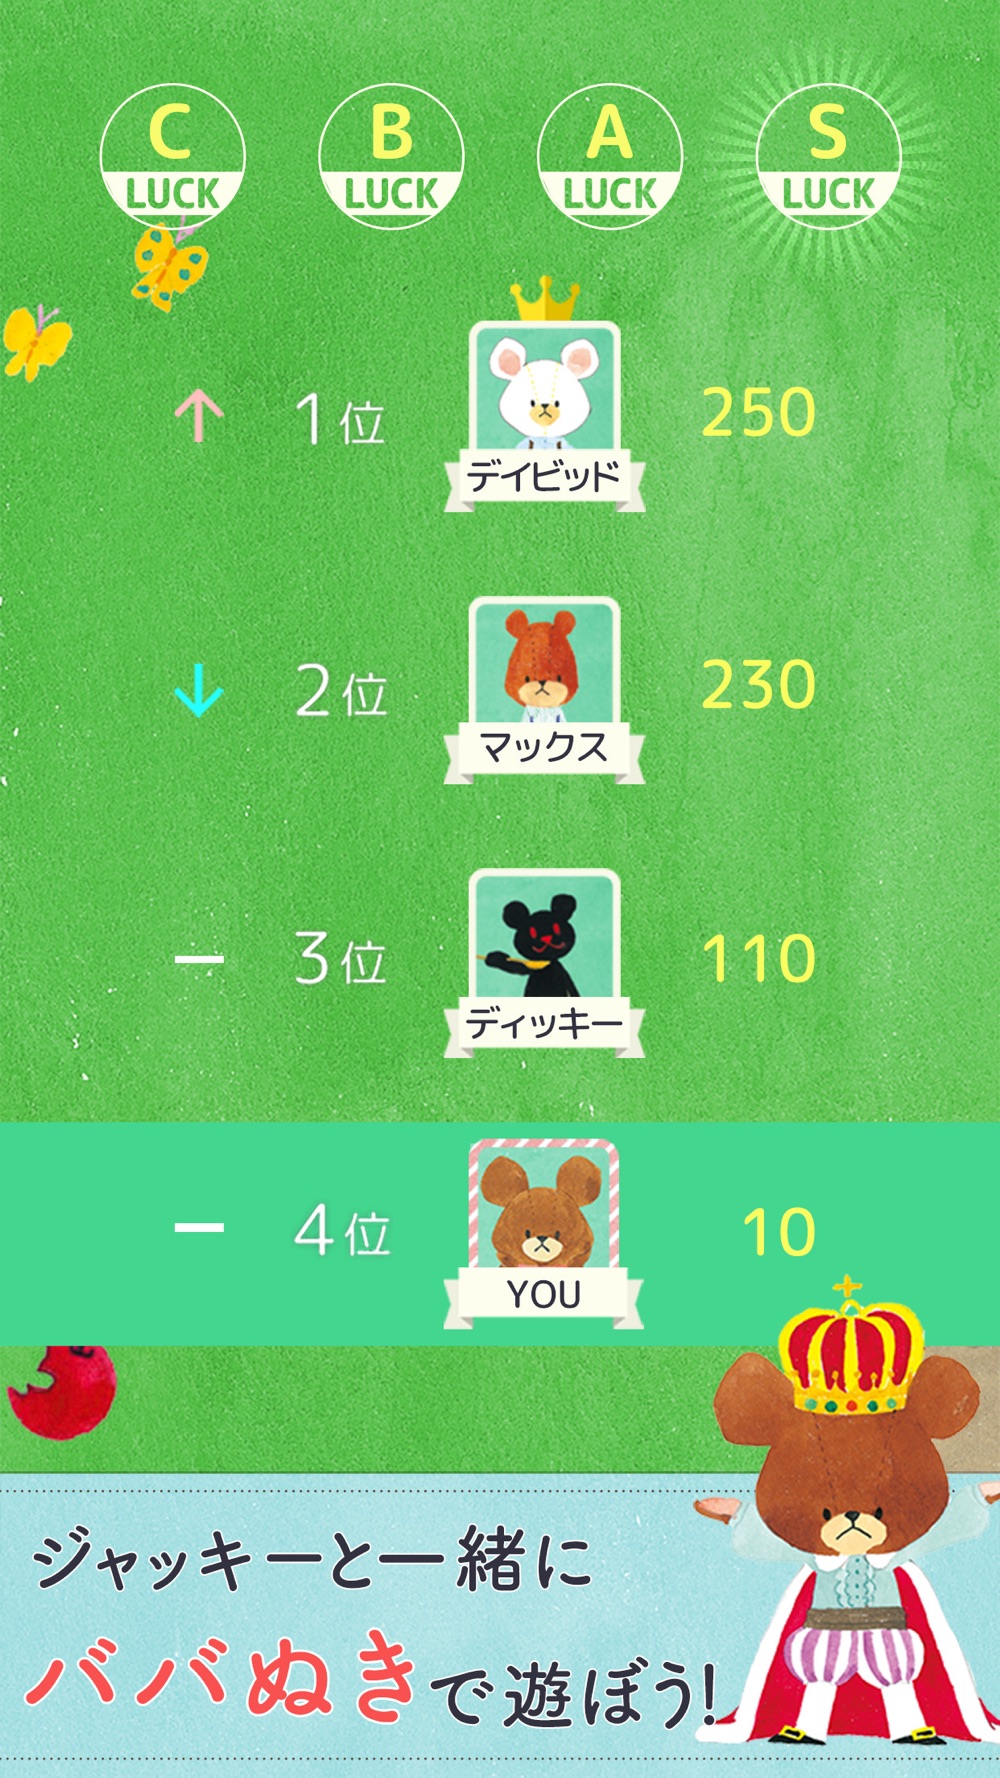 くまのがっこう ババ抜き 公式アプリ 人気トランプゲーム Free Download App For Iphone Steprimo Com